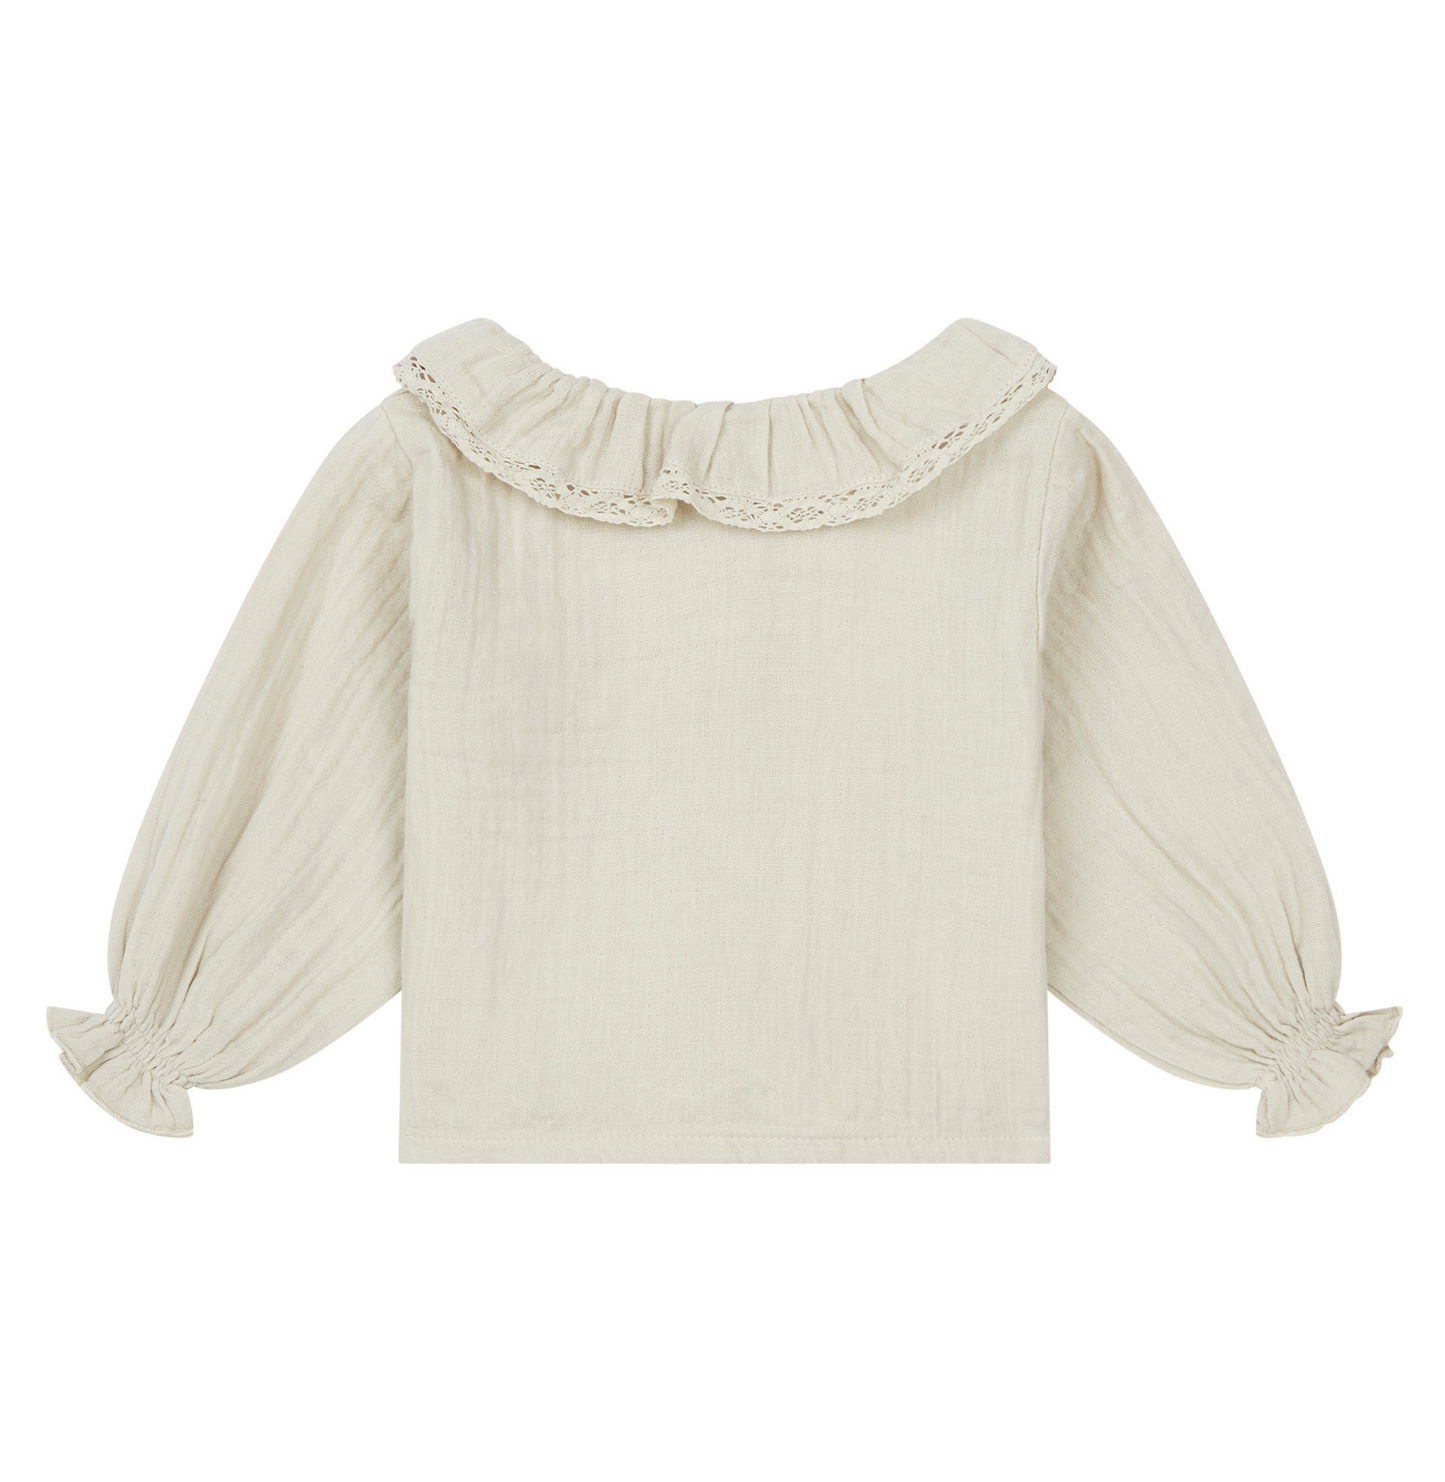 blouse bianca argile marlot paris